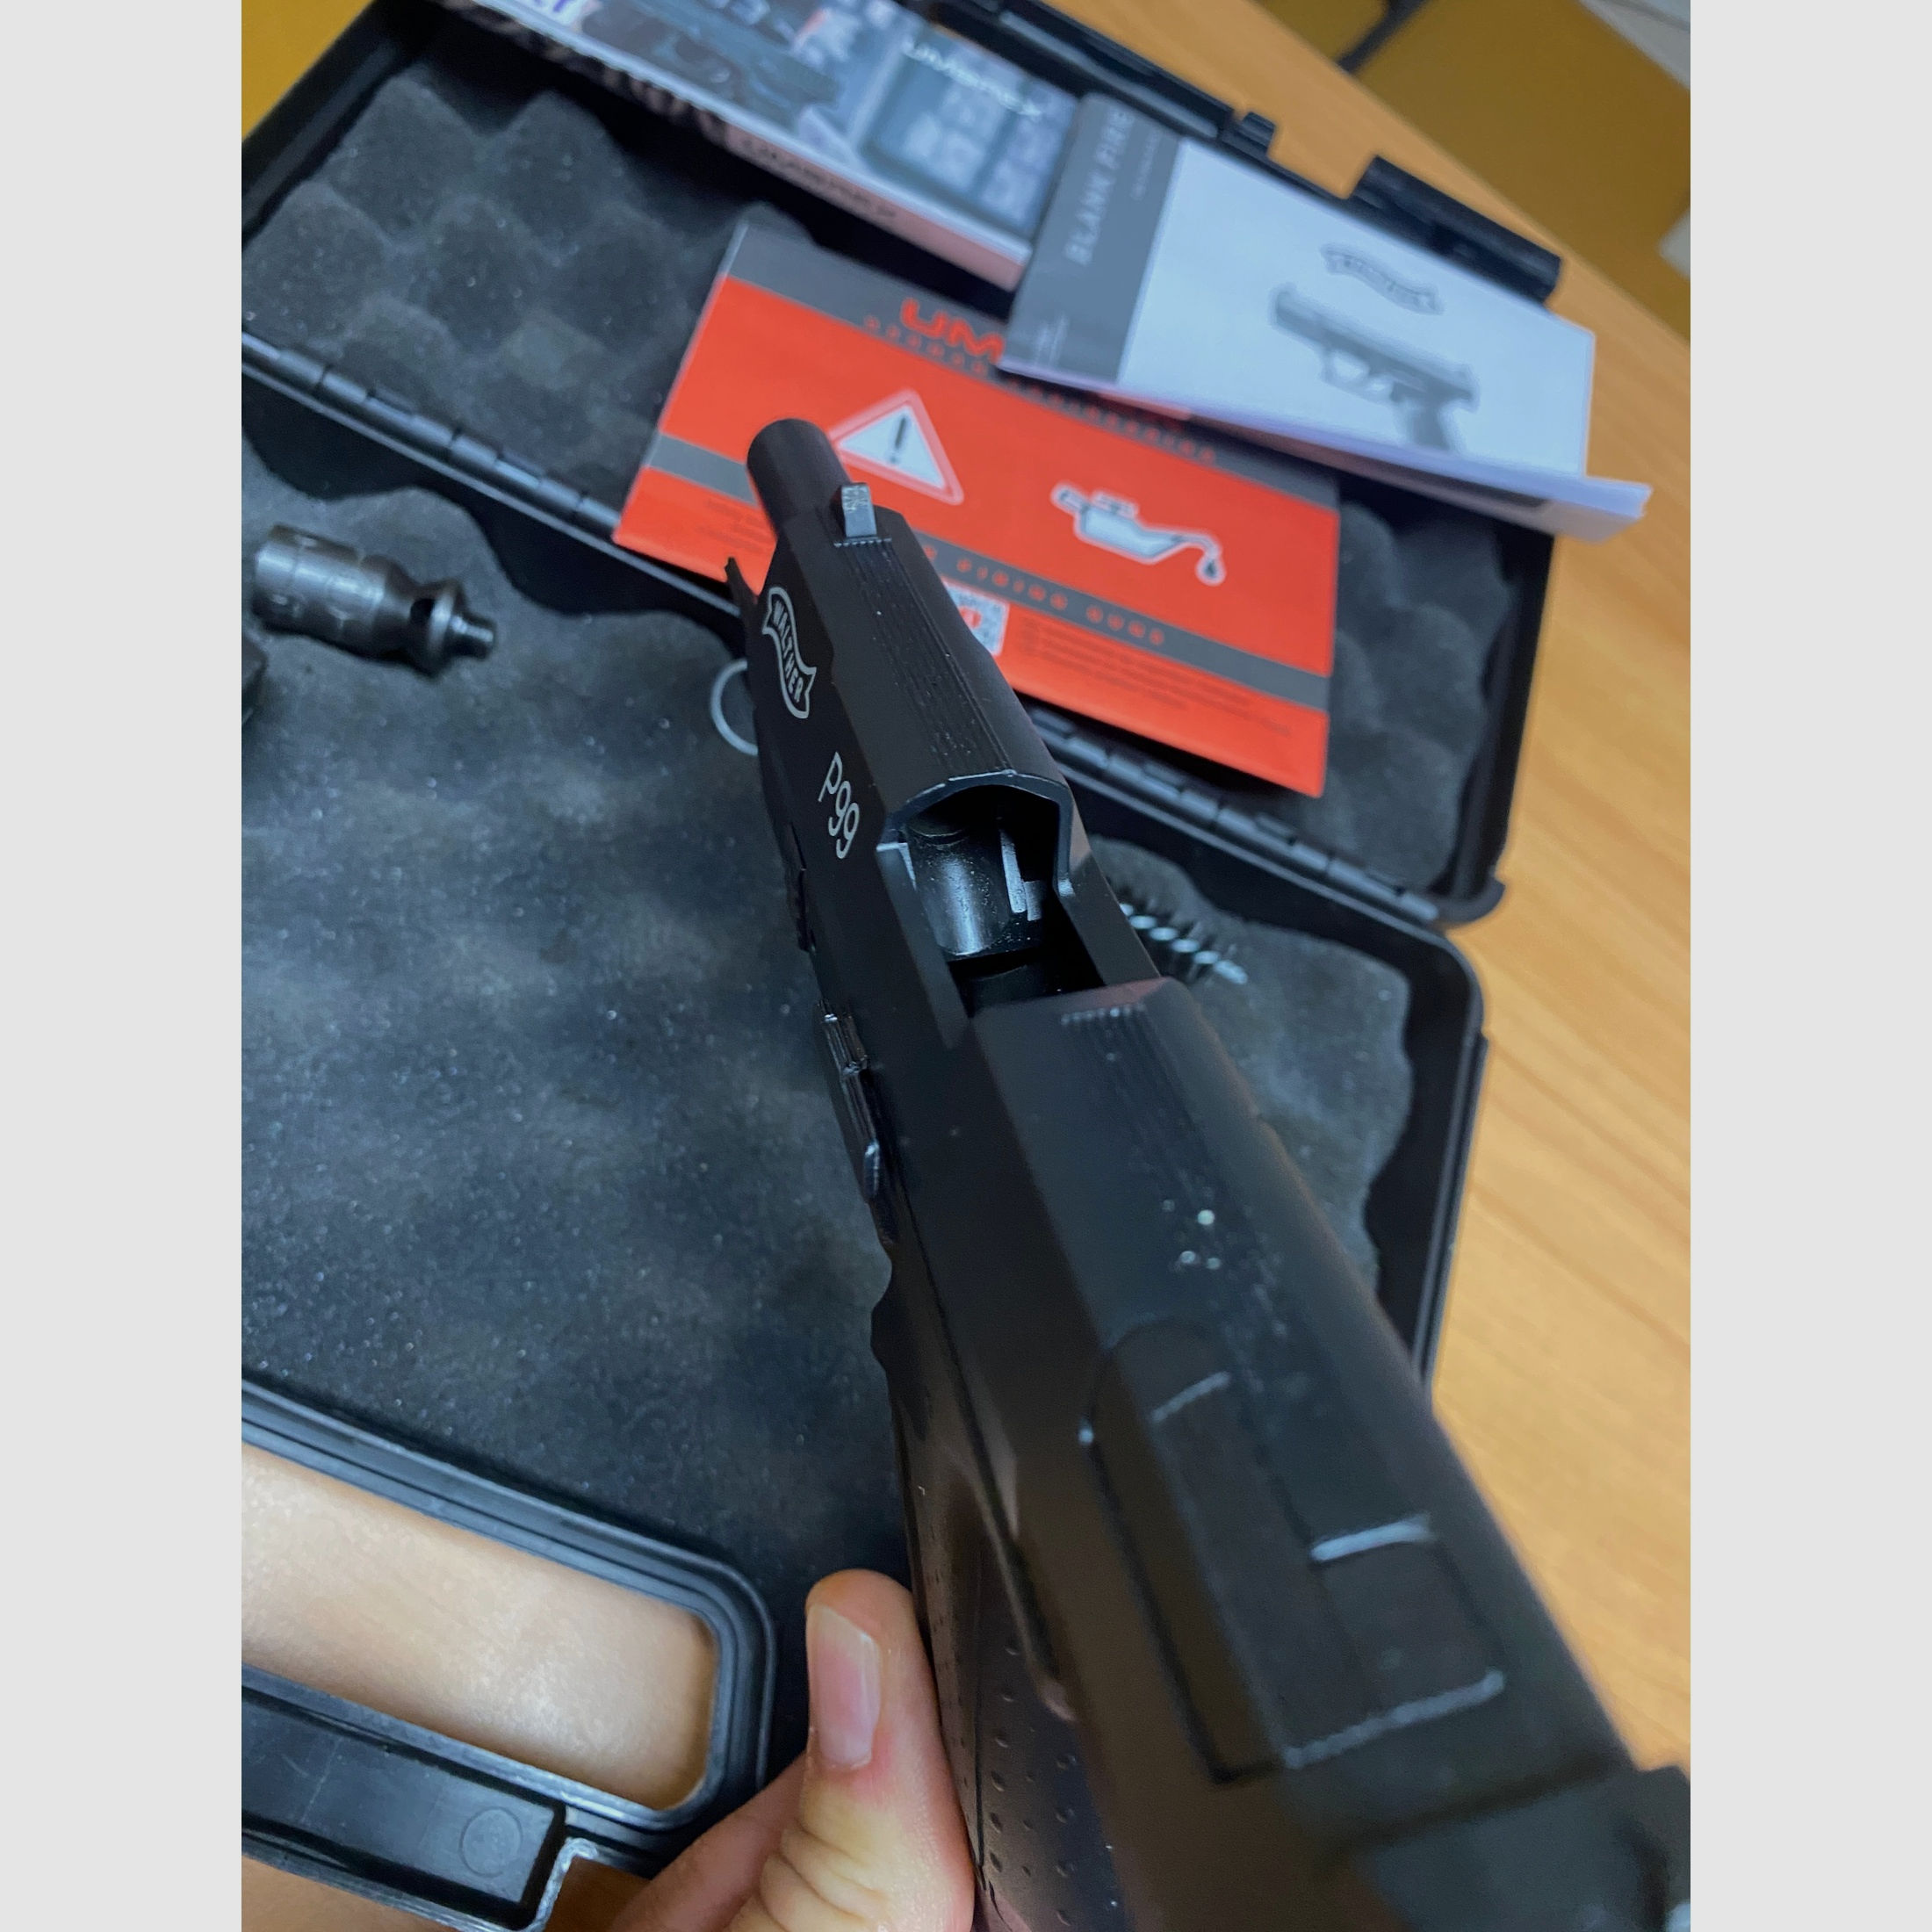 Walther P99 Schreckschuss Pistole 9 mm P.A.K. wie neu - nur zur Trockenübung benutzt mit Koffer 